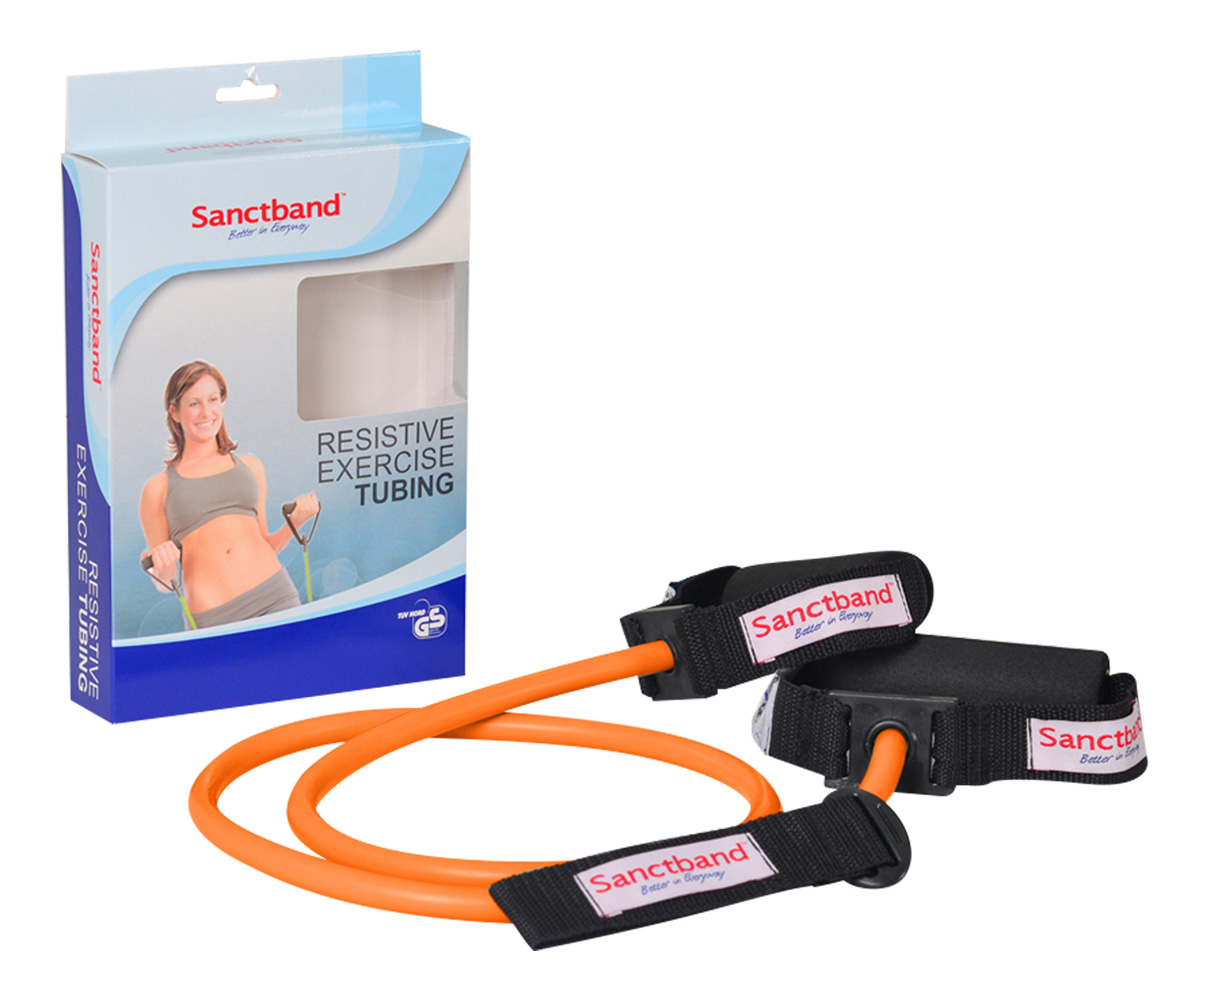 Sanctband Resistive Exercise Tubing Orange